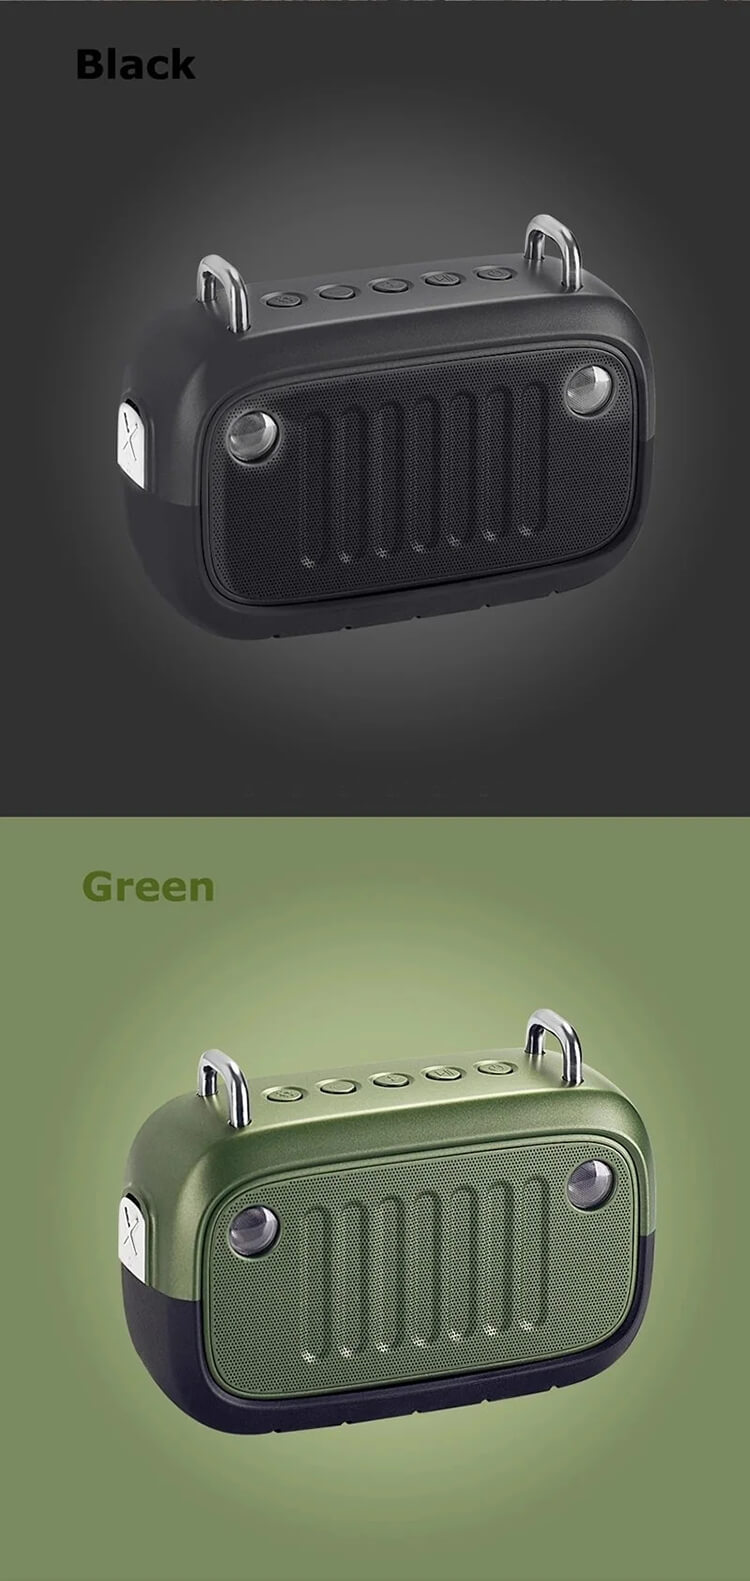 Portable-Waterproof-Shower-Karaoke-System-Water-Proof-Outdoor-Wireless-Bluetooth-Speaker.webp (1).jpg